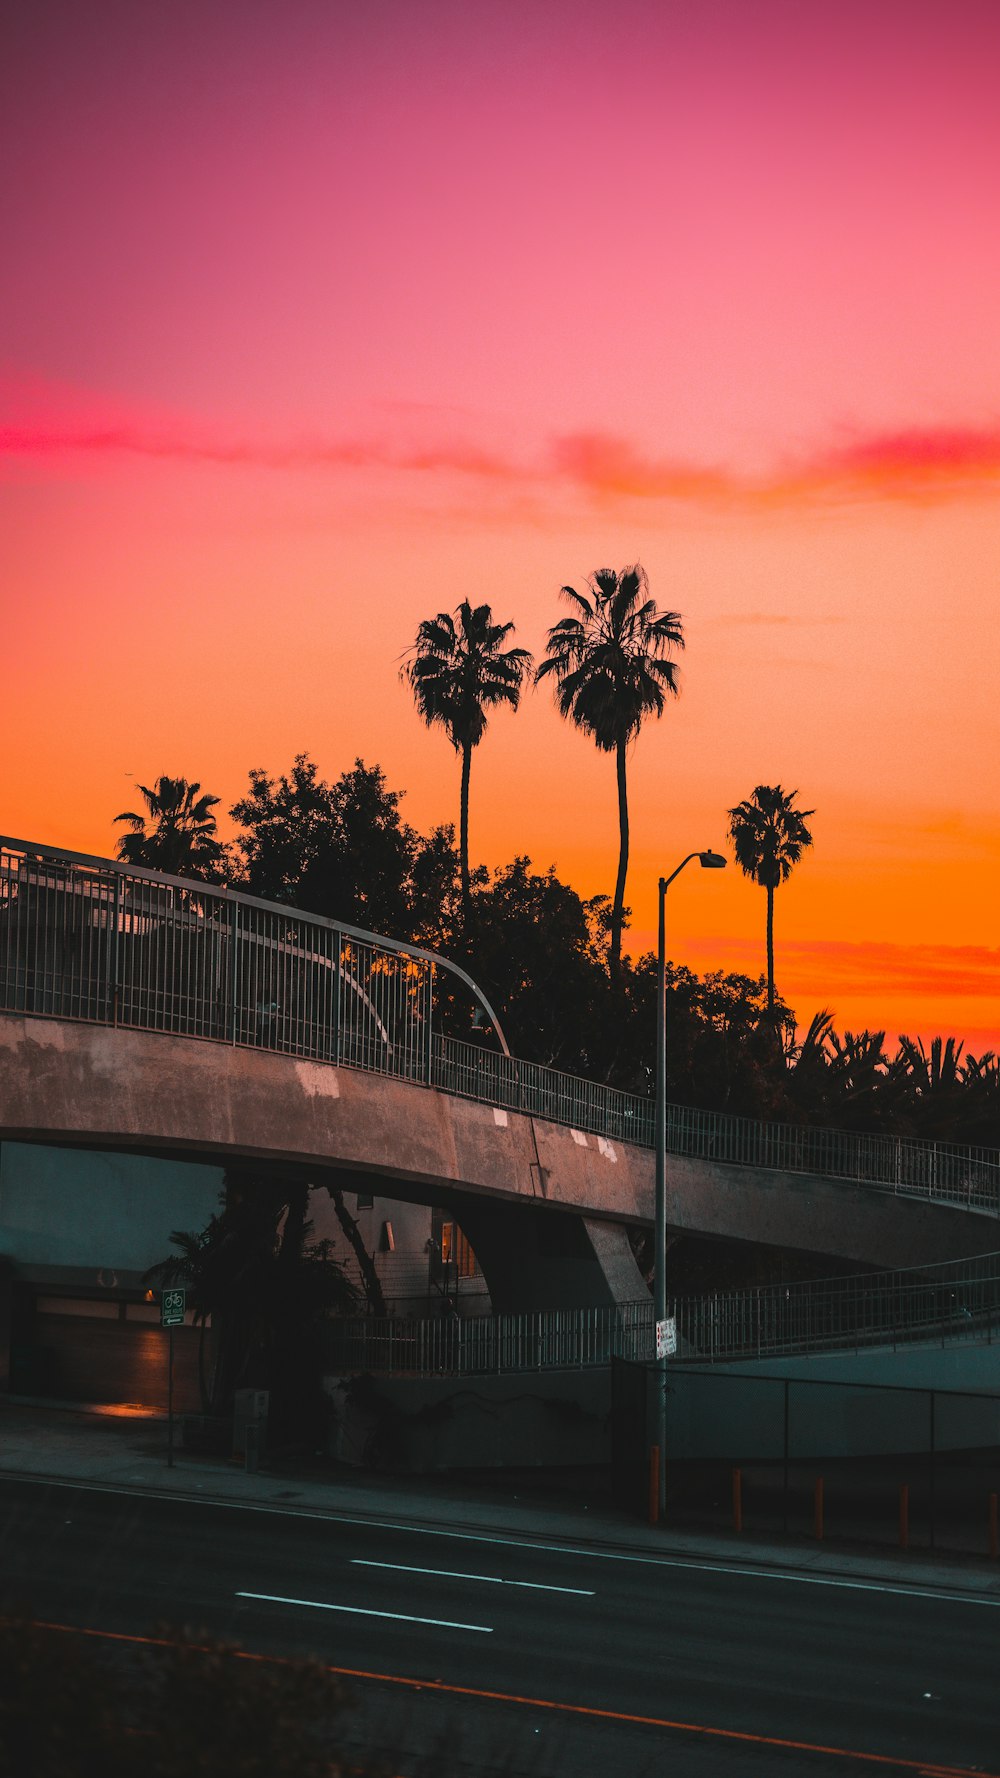 a sunset over a bridge